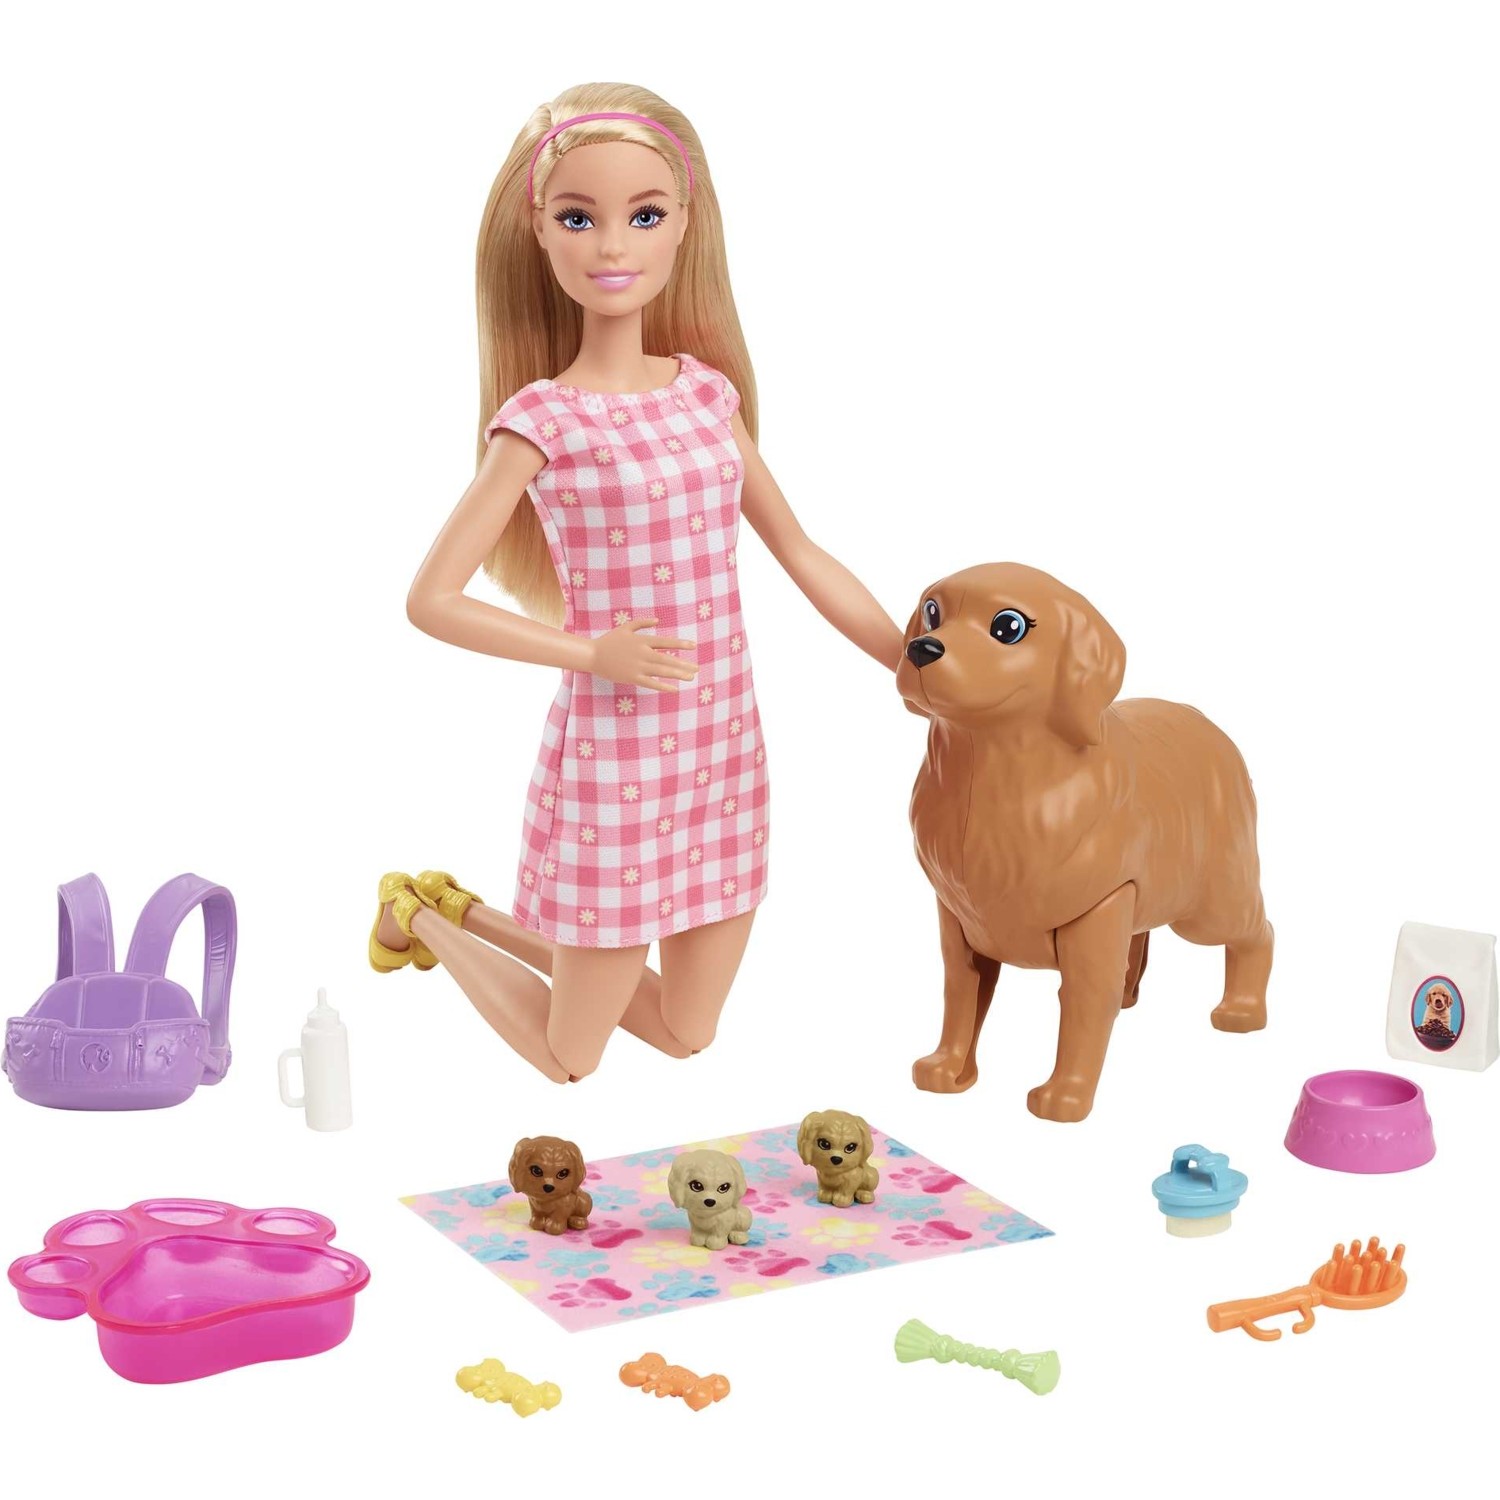 Игровой набор Barbie с питомцами Hck75 кукла барби с феном и короной 29 см игровой набор барби с аксессуарами интерактивная игрушка кукла